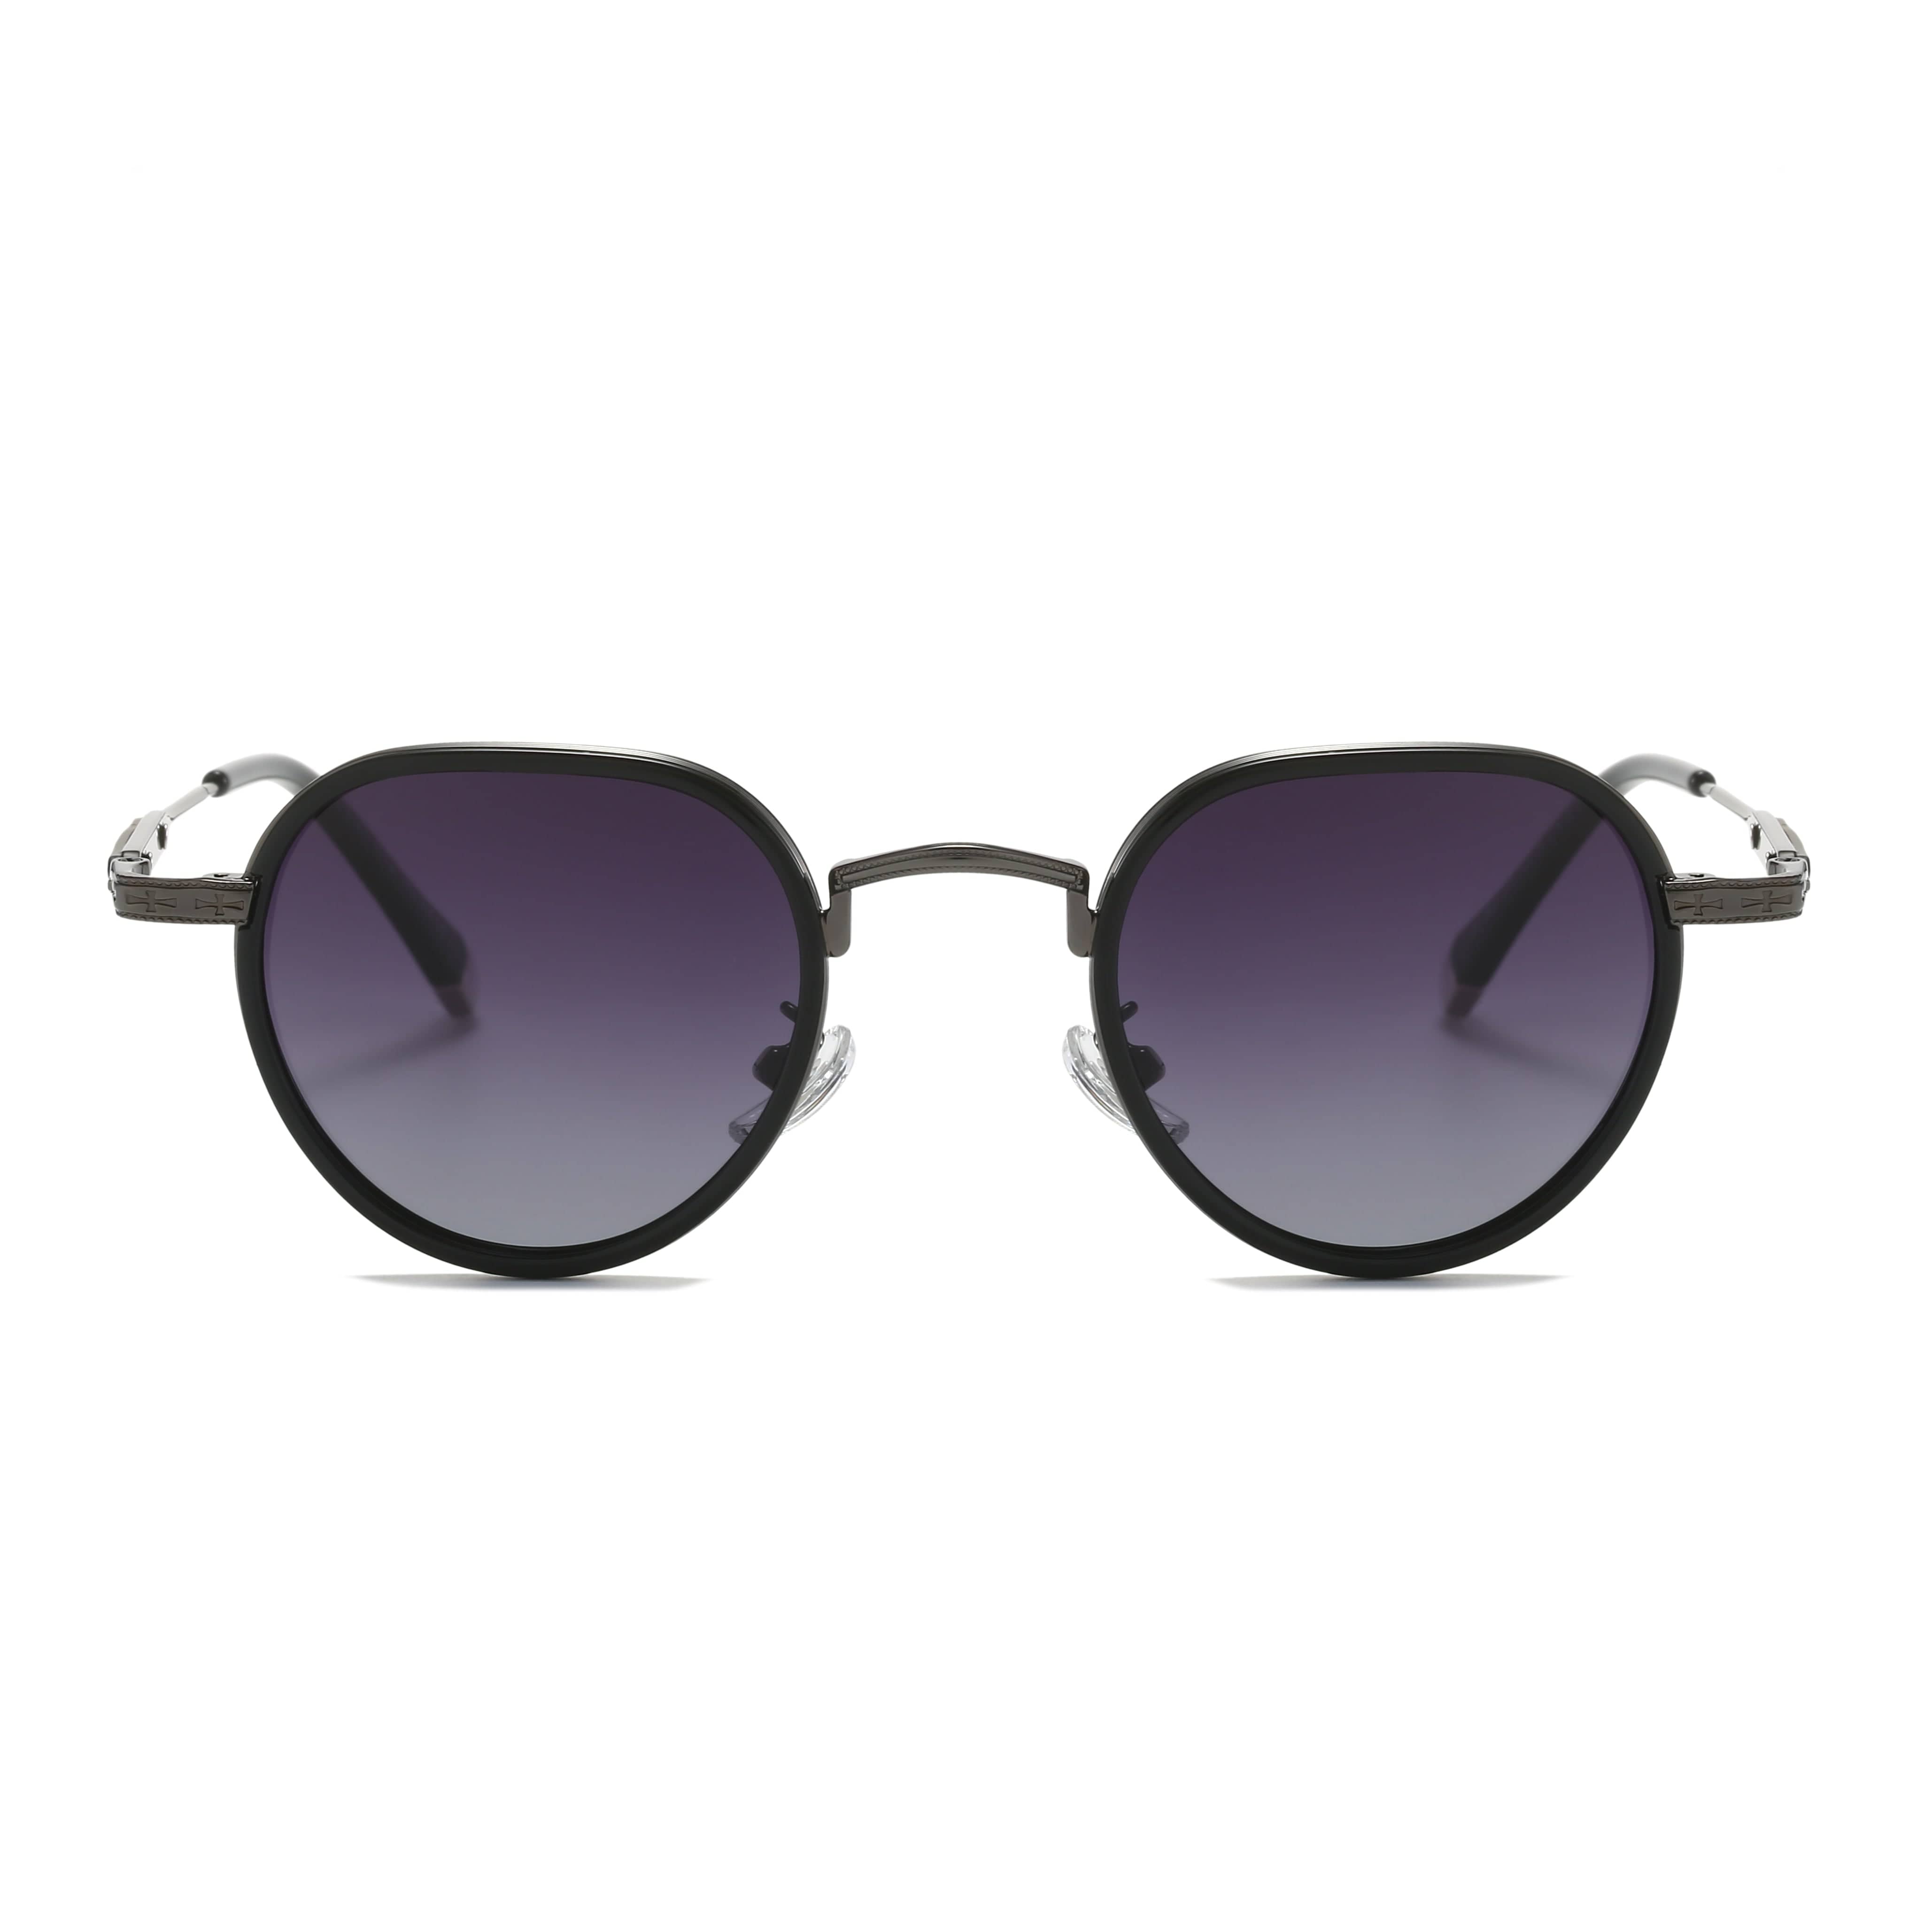 GIUSTIZIERI VECCHI Sunglasses Small / Purple Grey LuxeLady